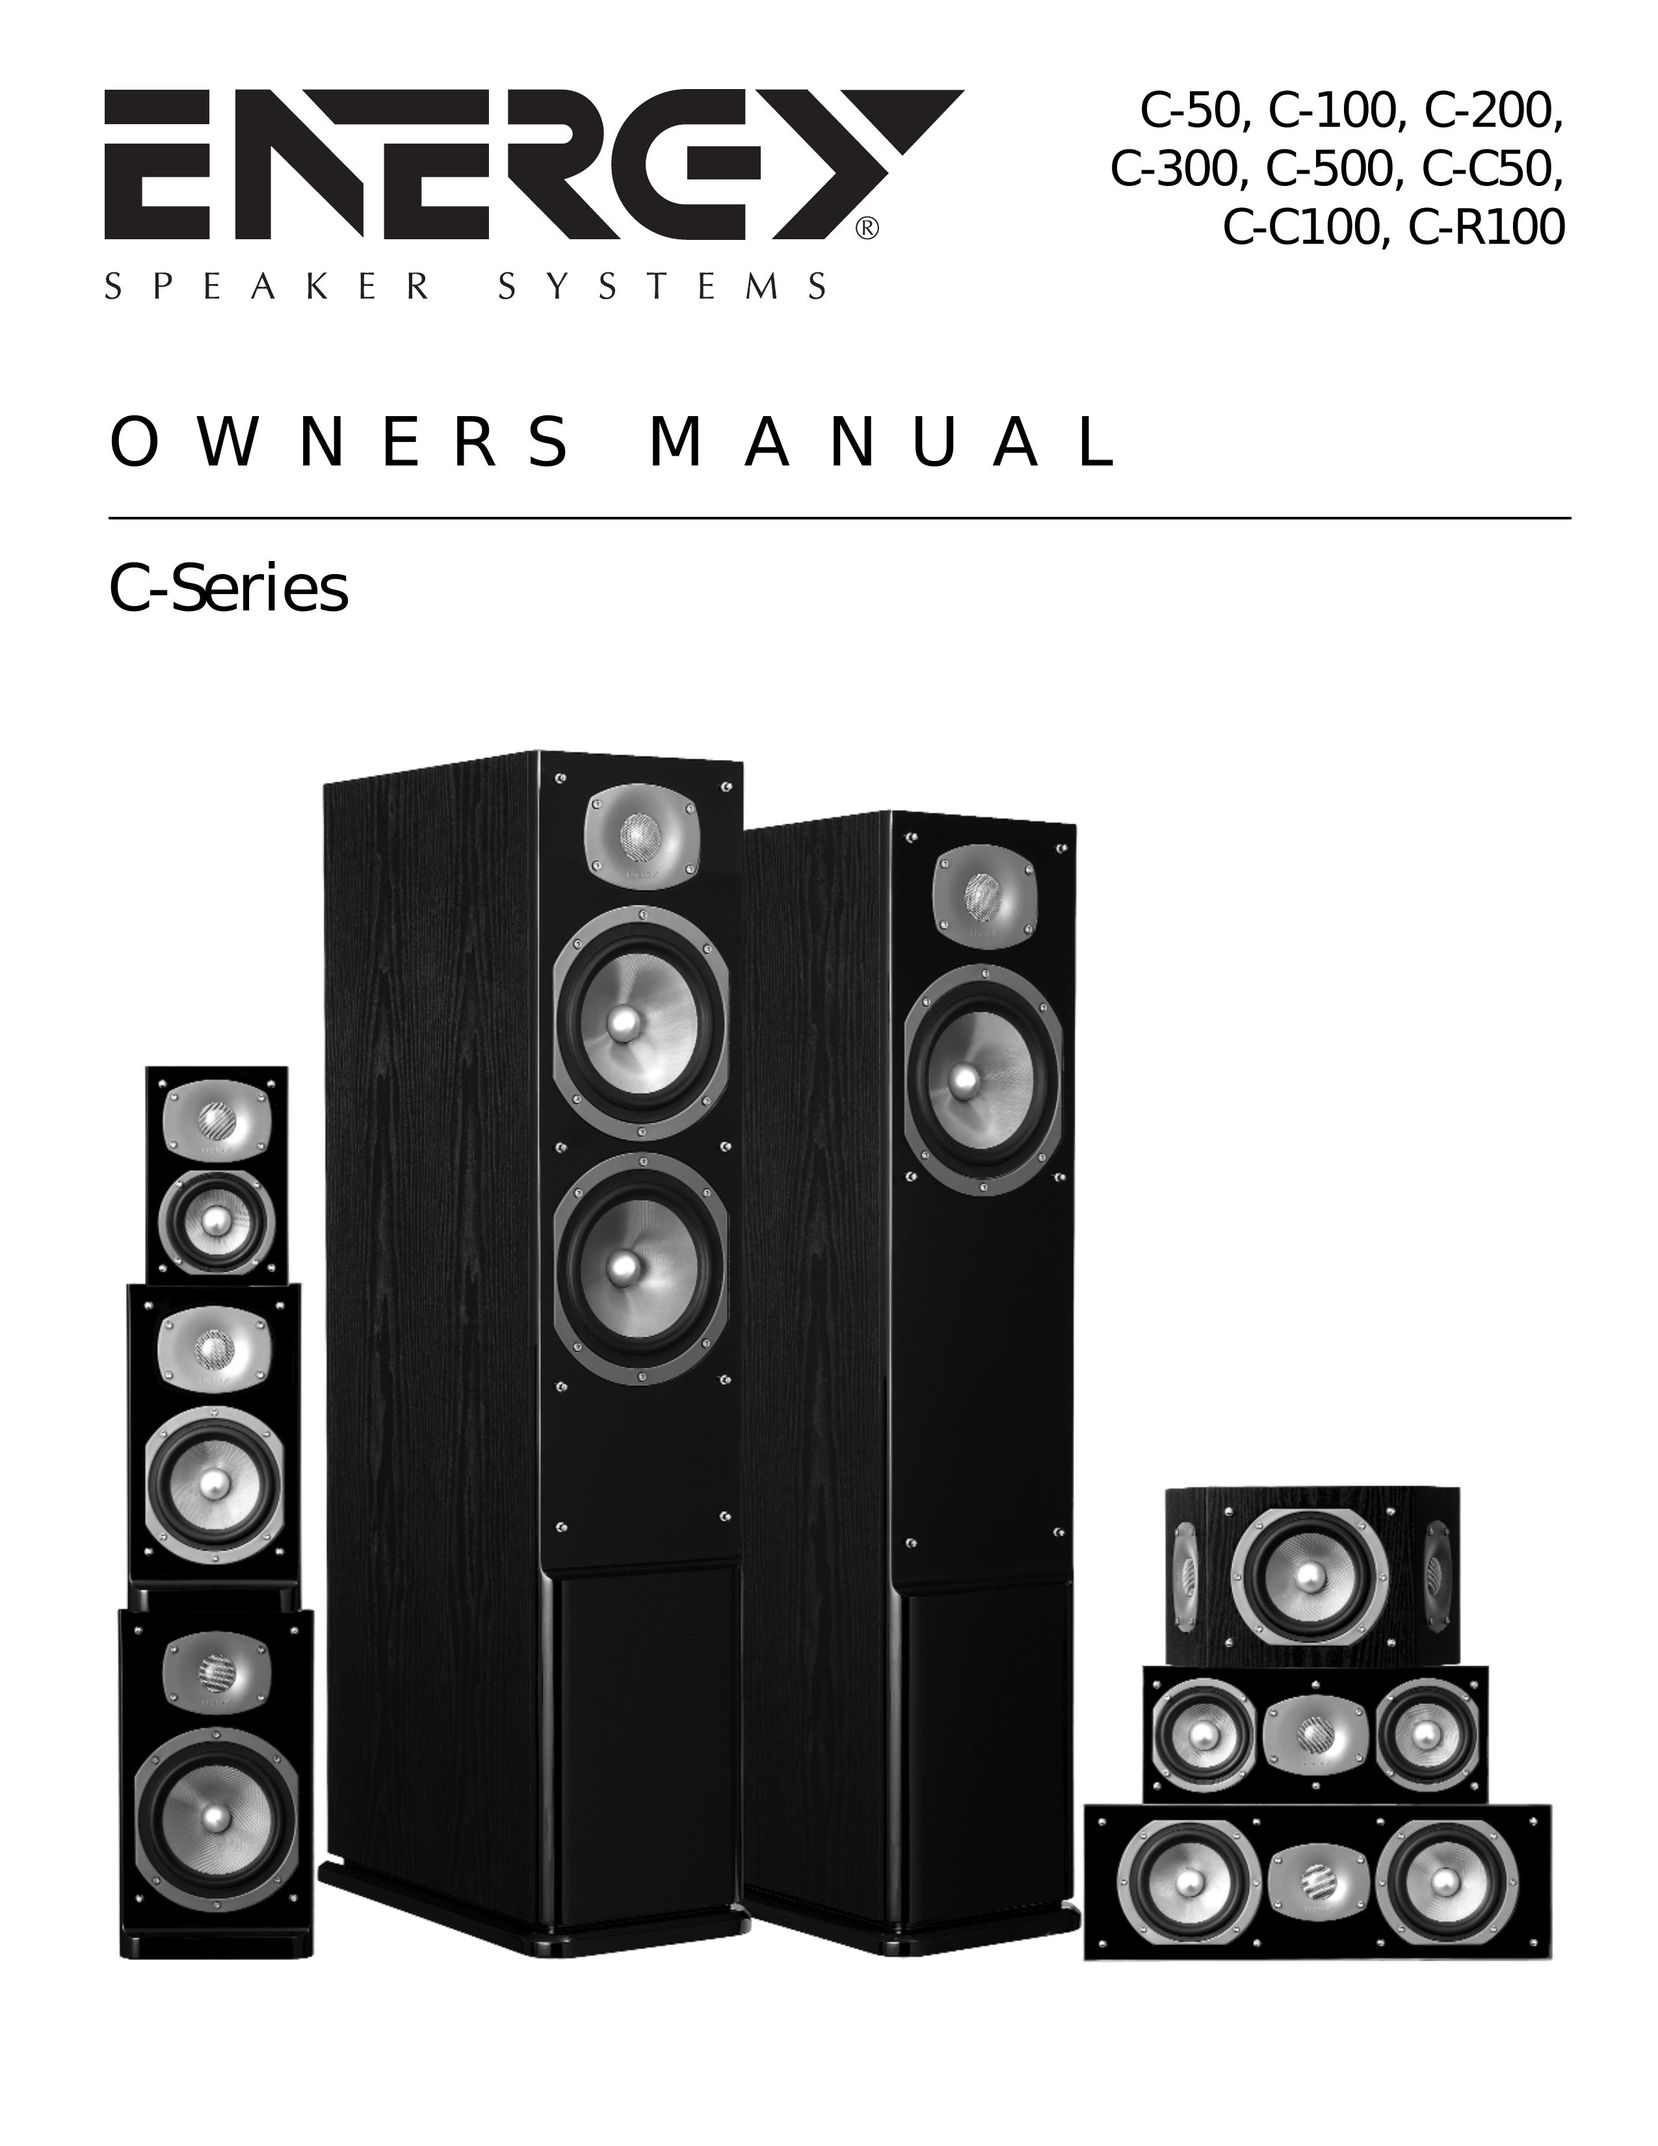 Energy Speaker Systems C-200 Speaker User Manual